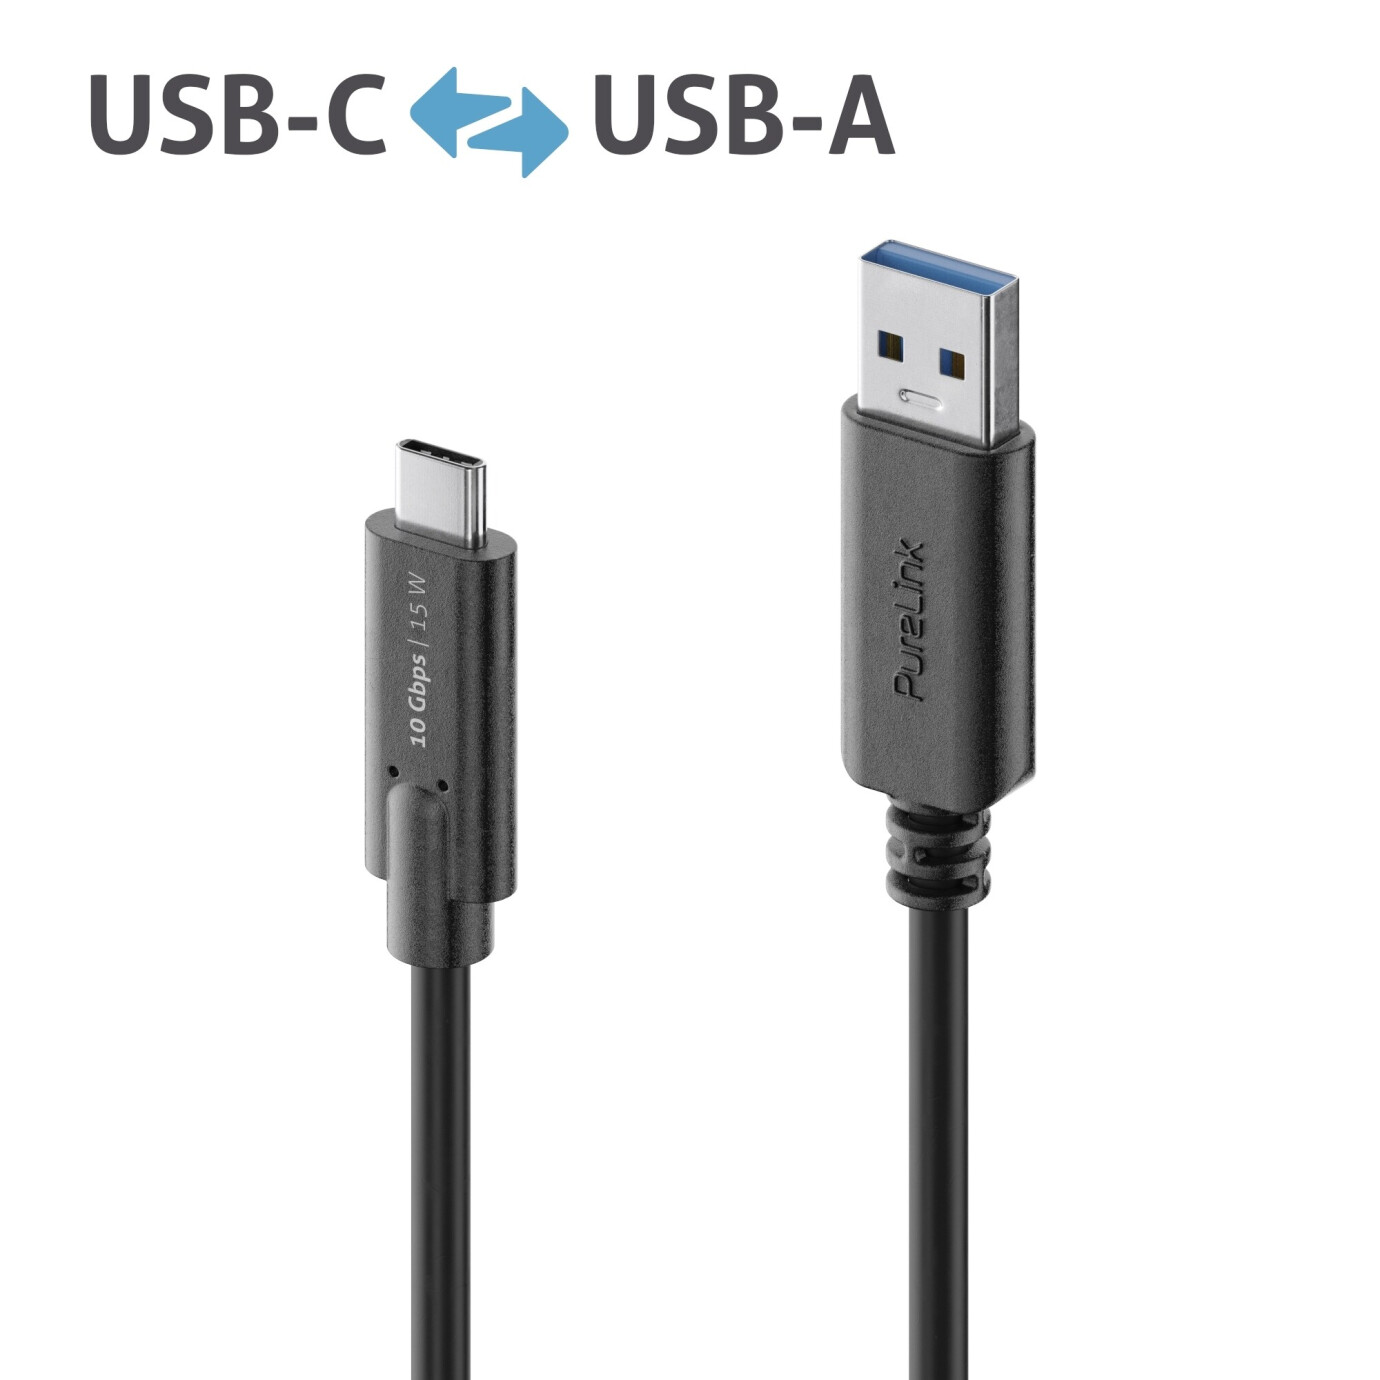 Purelink IS2611-010 USB-C auf USB-A (Gen 2) Kabel 1m schwarz